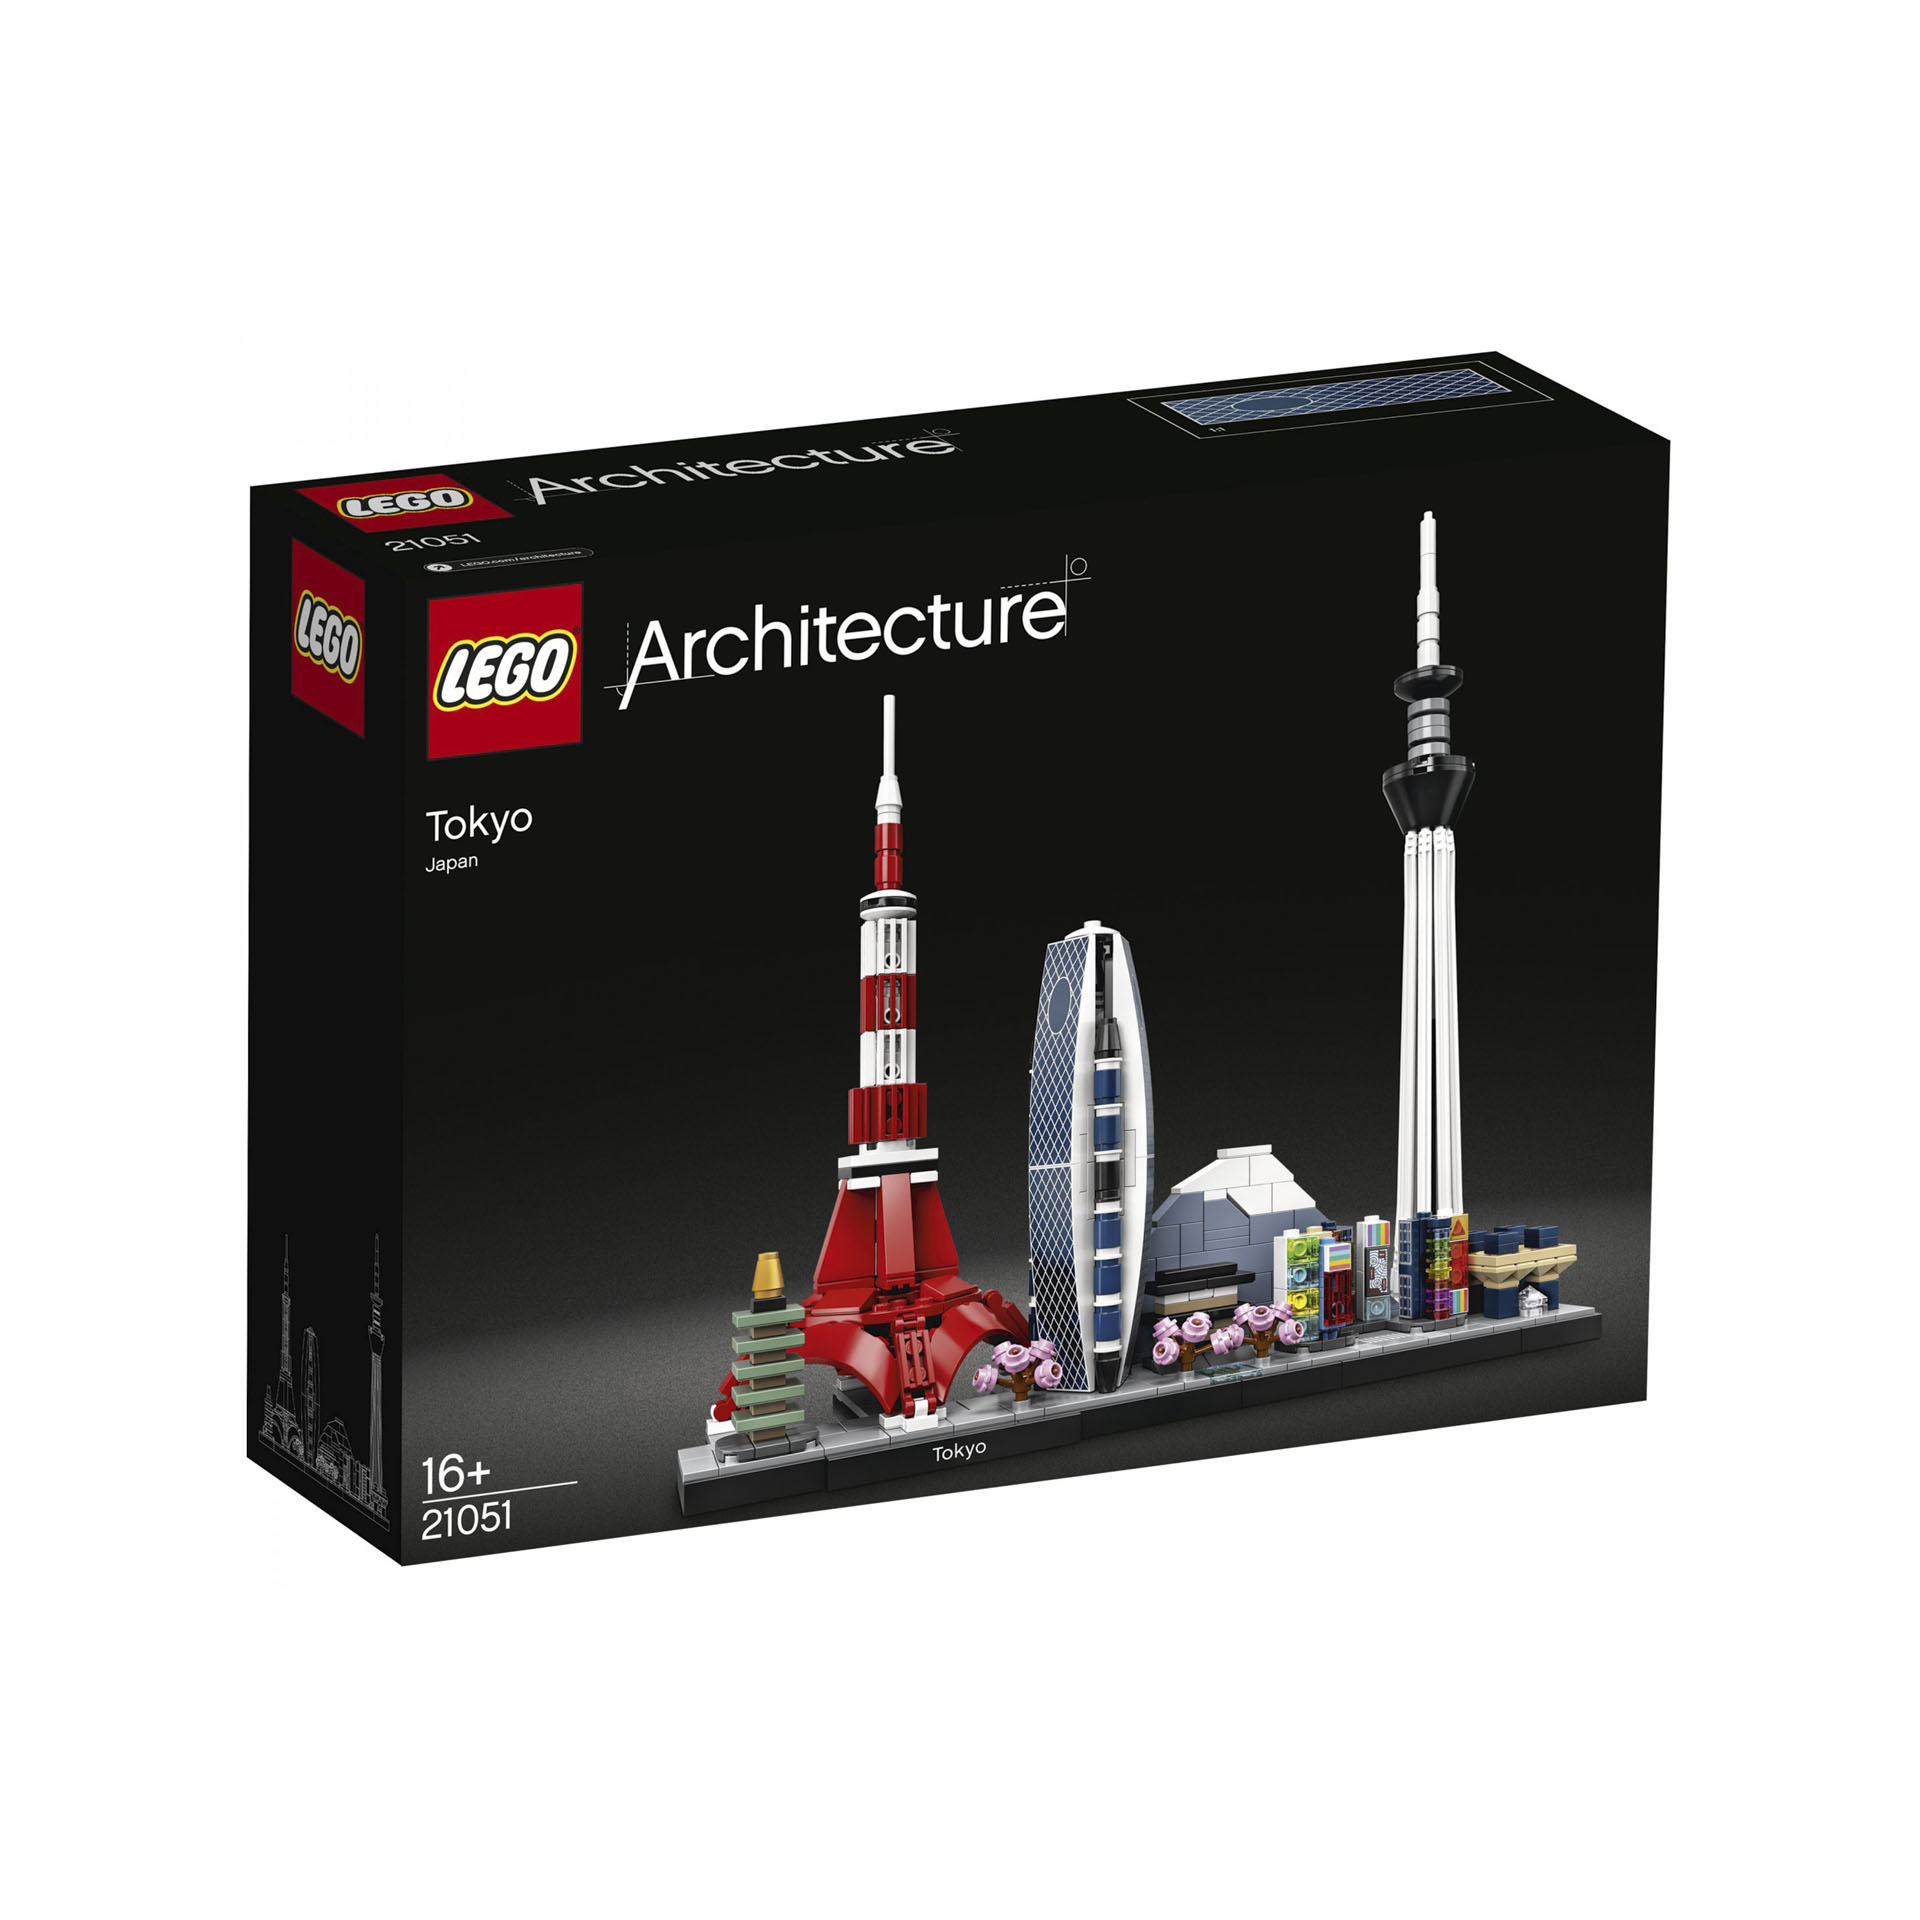 LEGO Architecture Tokyo, Collezione Skyline, Set di Edifici da Collezione, 21051 21051, , large